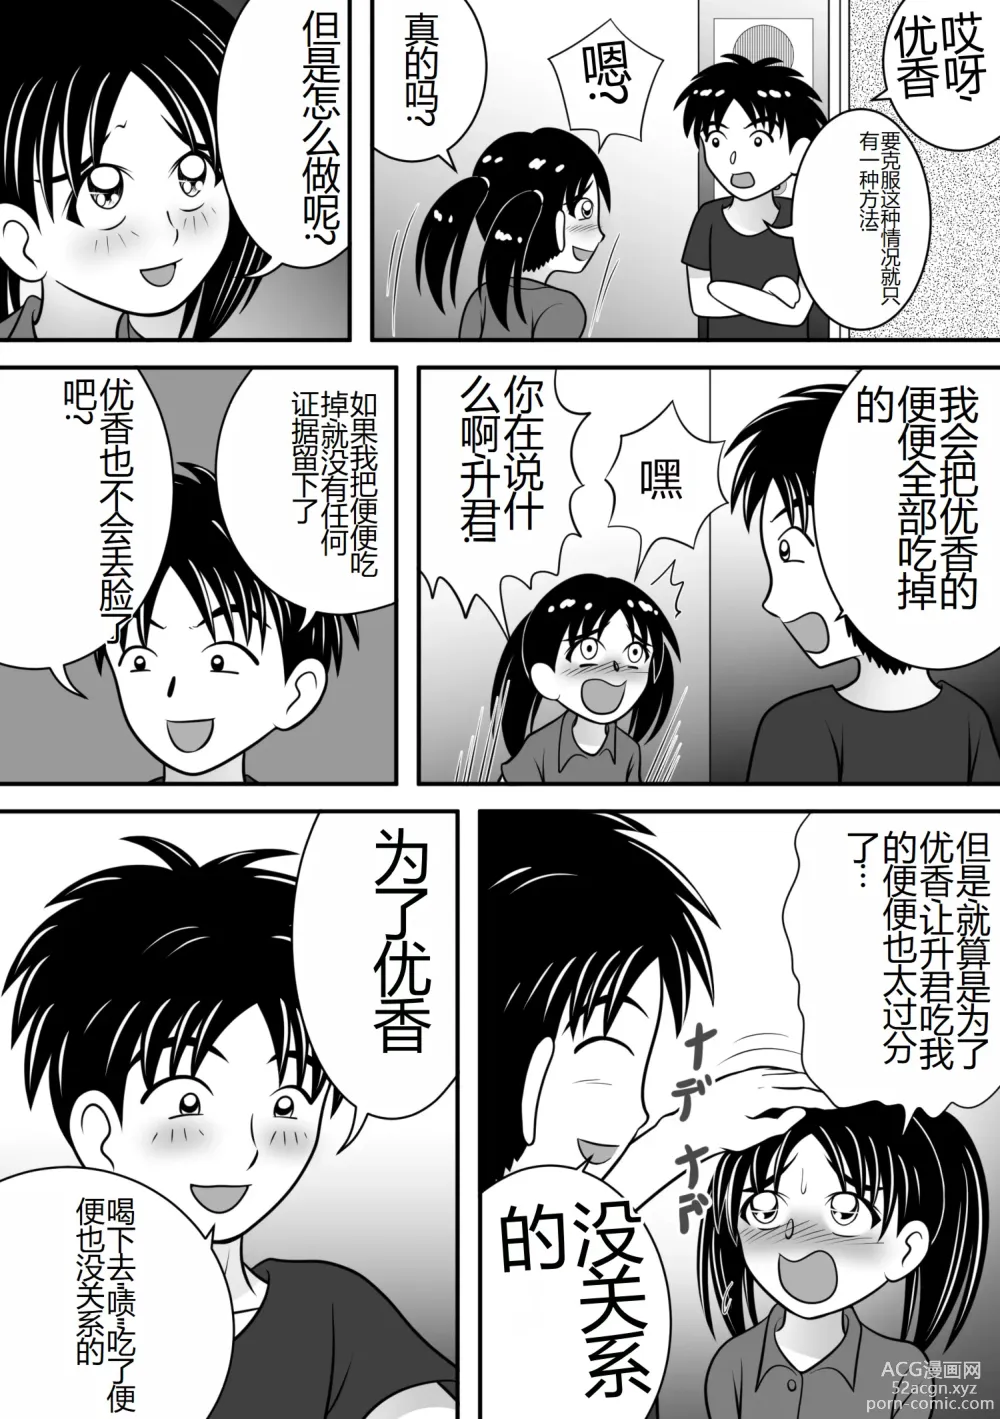 Page 6 of doujinshi Atsuatsu Elevator